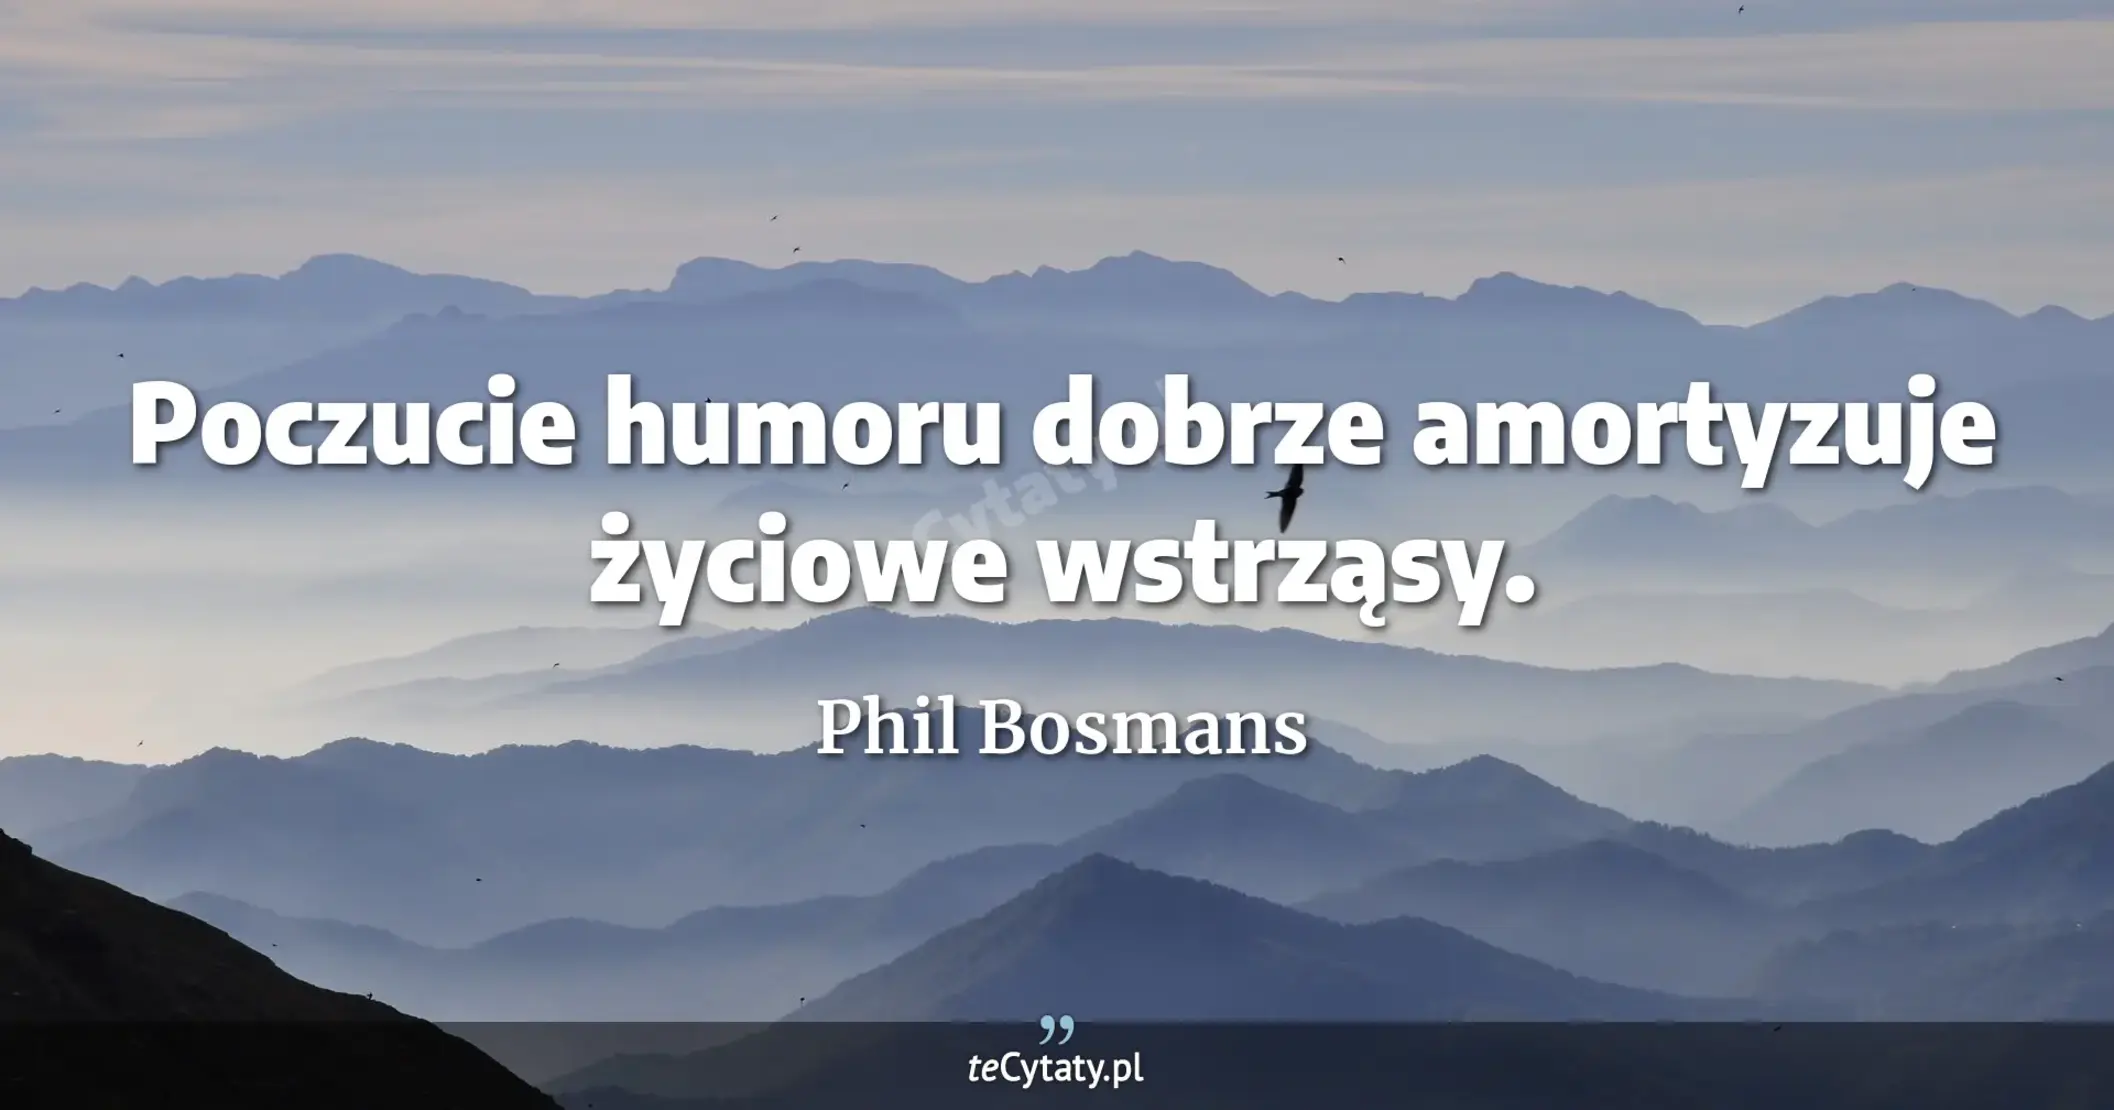 Poczucie humoru dobrze amortyzuje życiowe wstrząsy. - Phil Bosmans